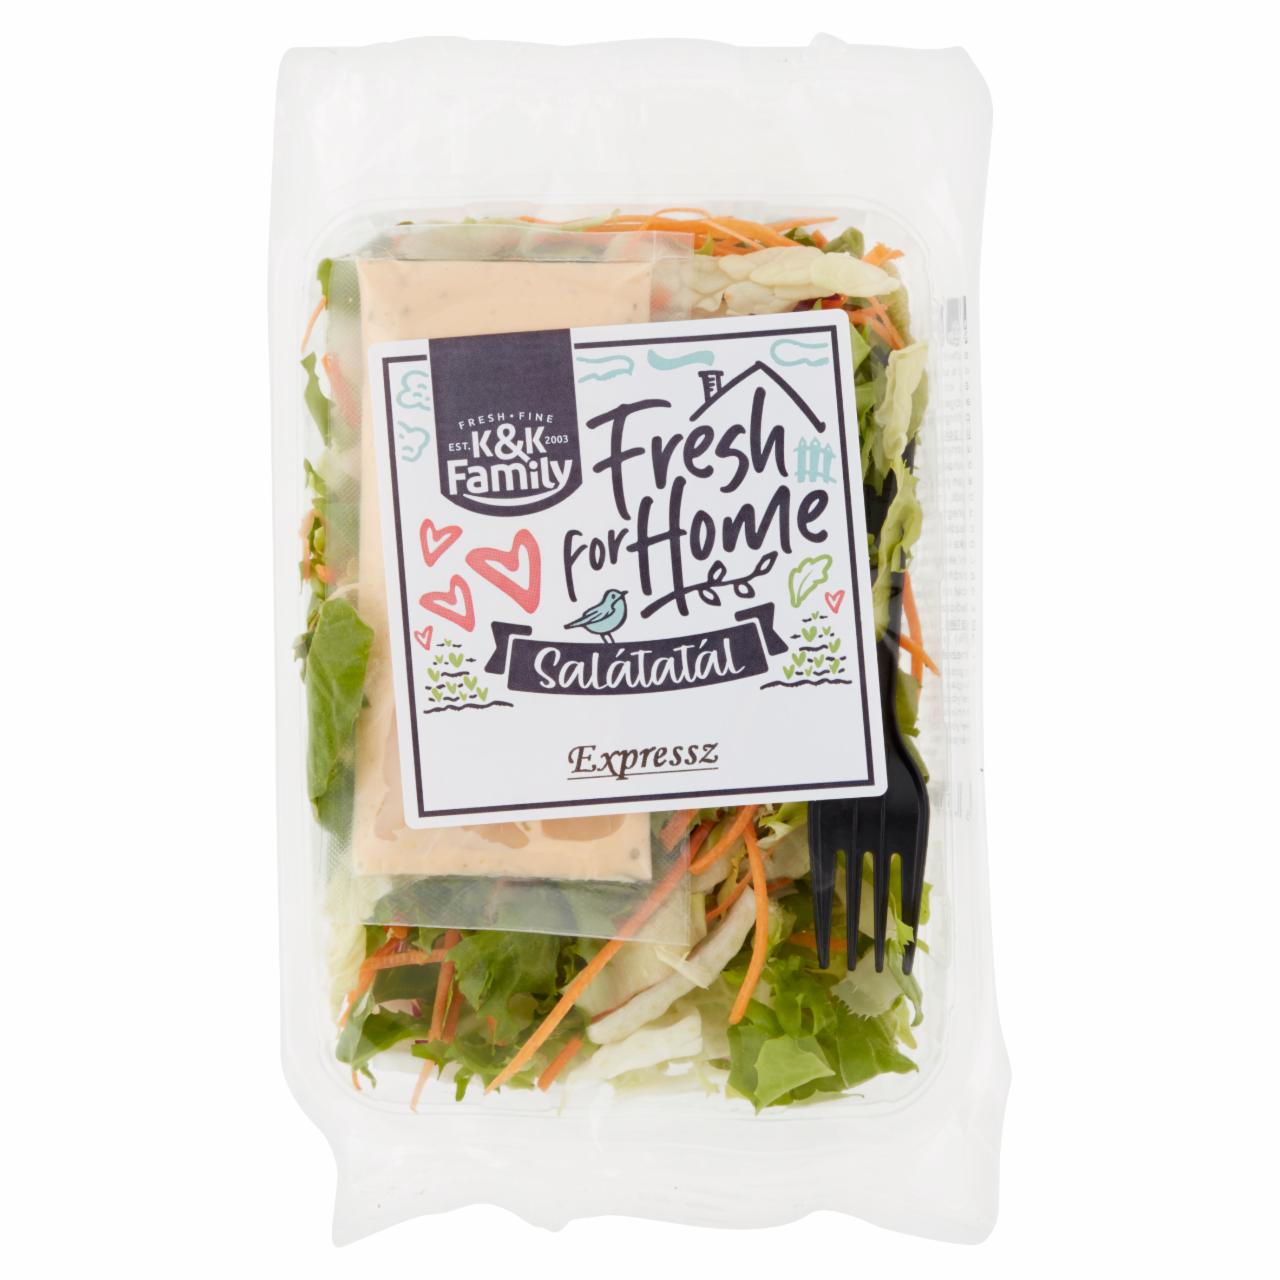 Képek - K&K Family Fresh for Home Express salátatál ezersziget öntettel 150 g